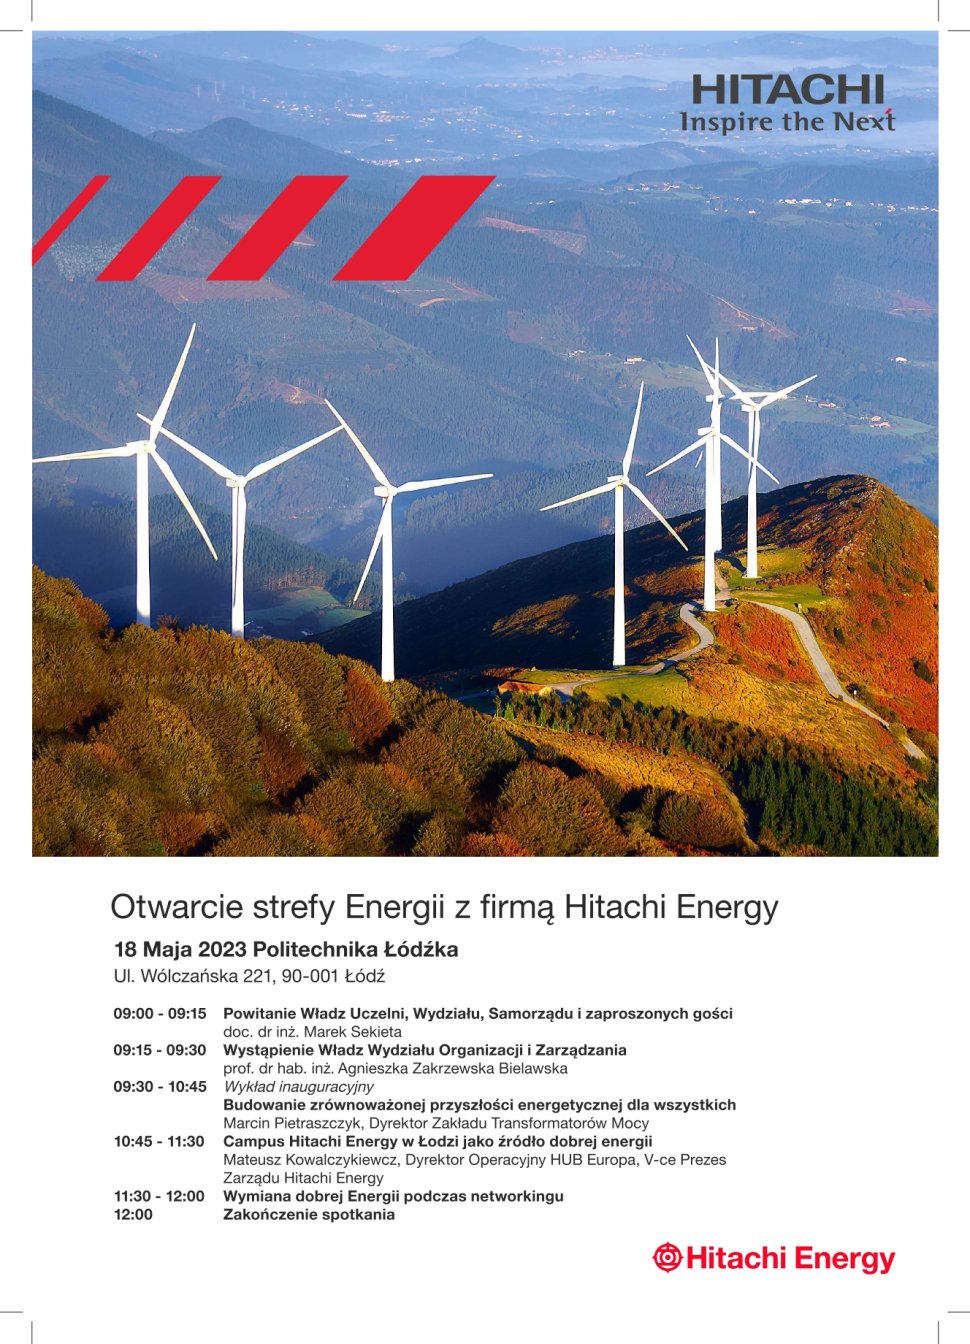 Otwarcie Strefy Energii z firmą Hitachi Energy